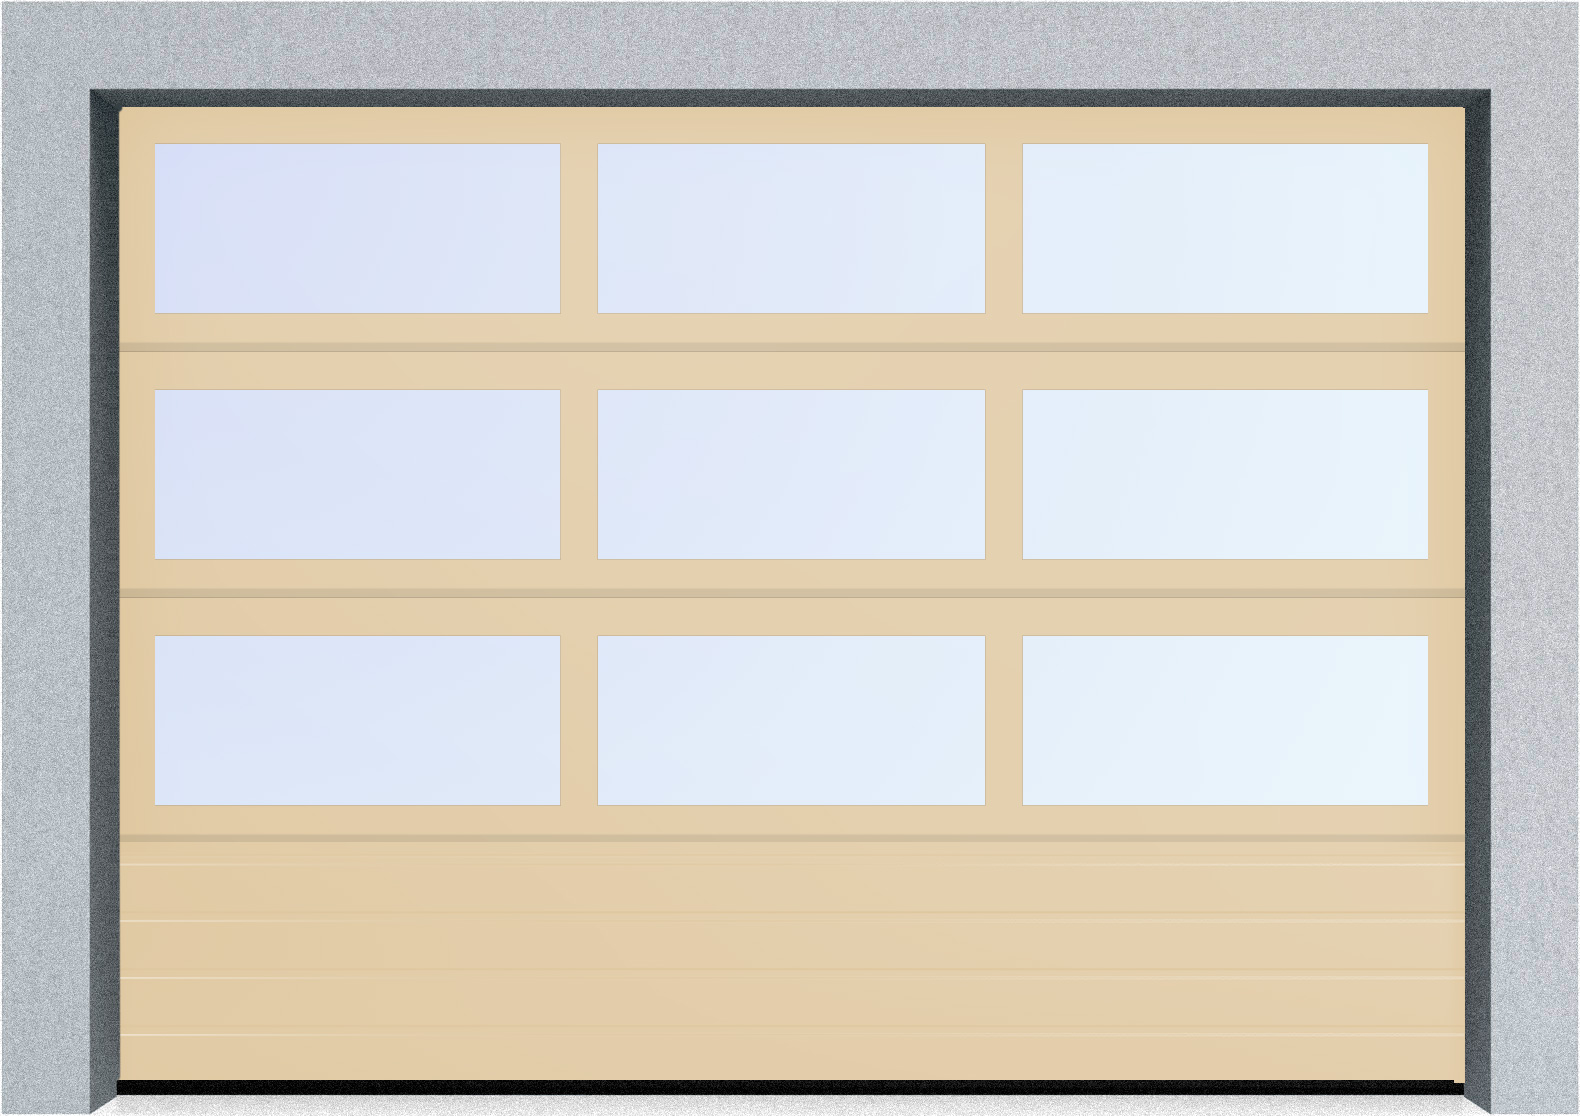  Секционные панорамные ворота серии AluTrend с комбинированным типом полотна (АЛПС) 2500х2375 нижняя панель S-гофр, Микроволна стандартные цвета, фото 2 